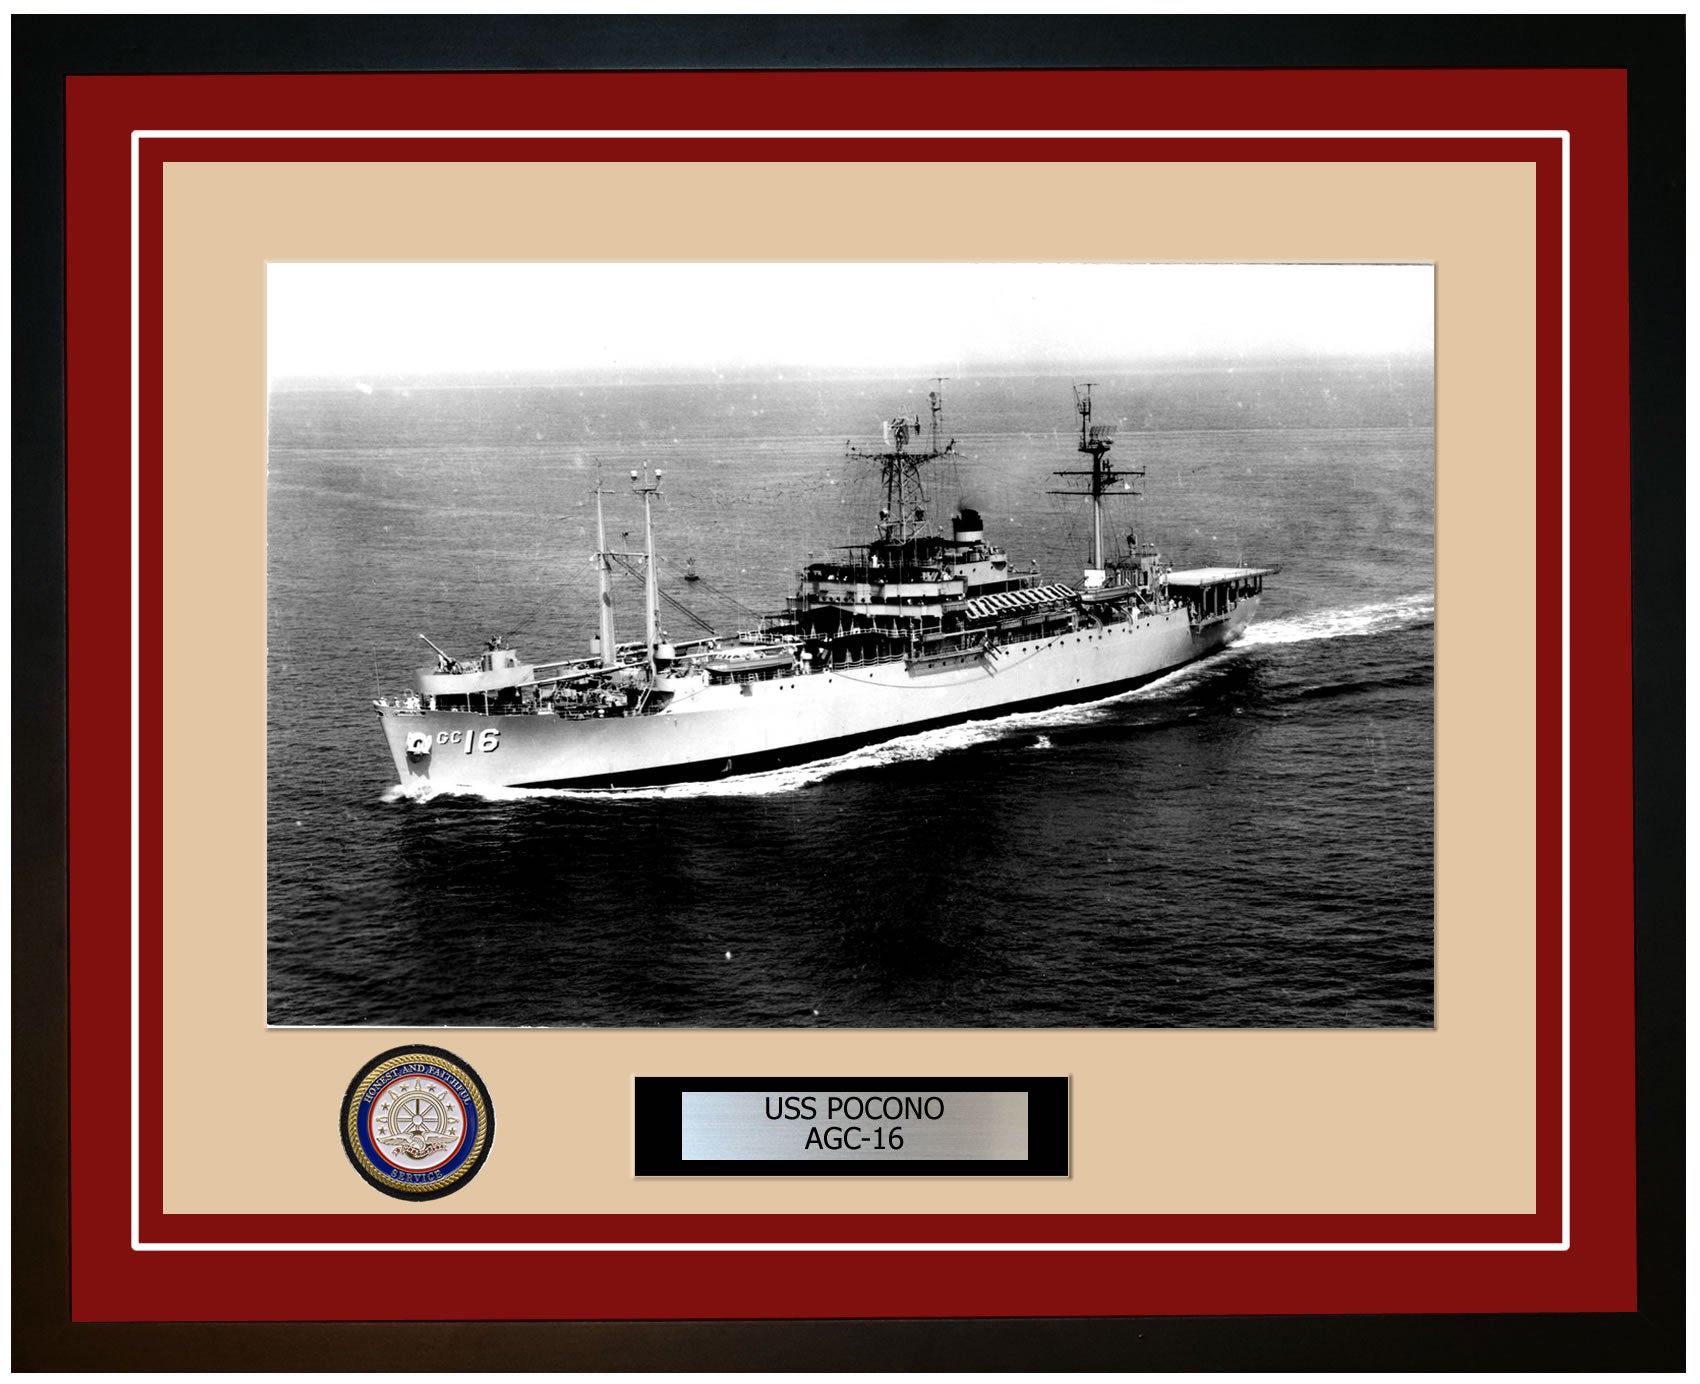 USS Pocono AGC-16 Framed Navy Ship Photo Burgundy